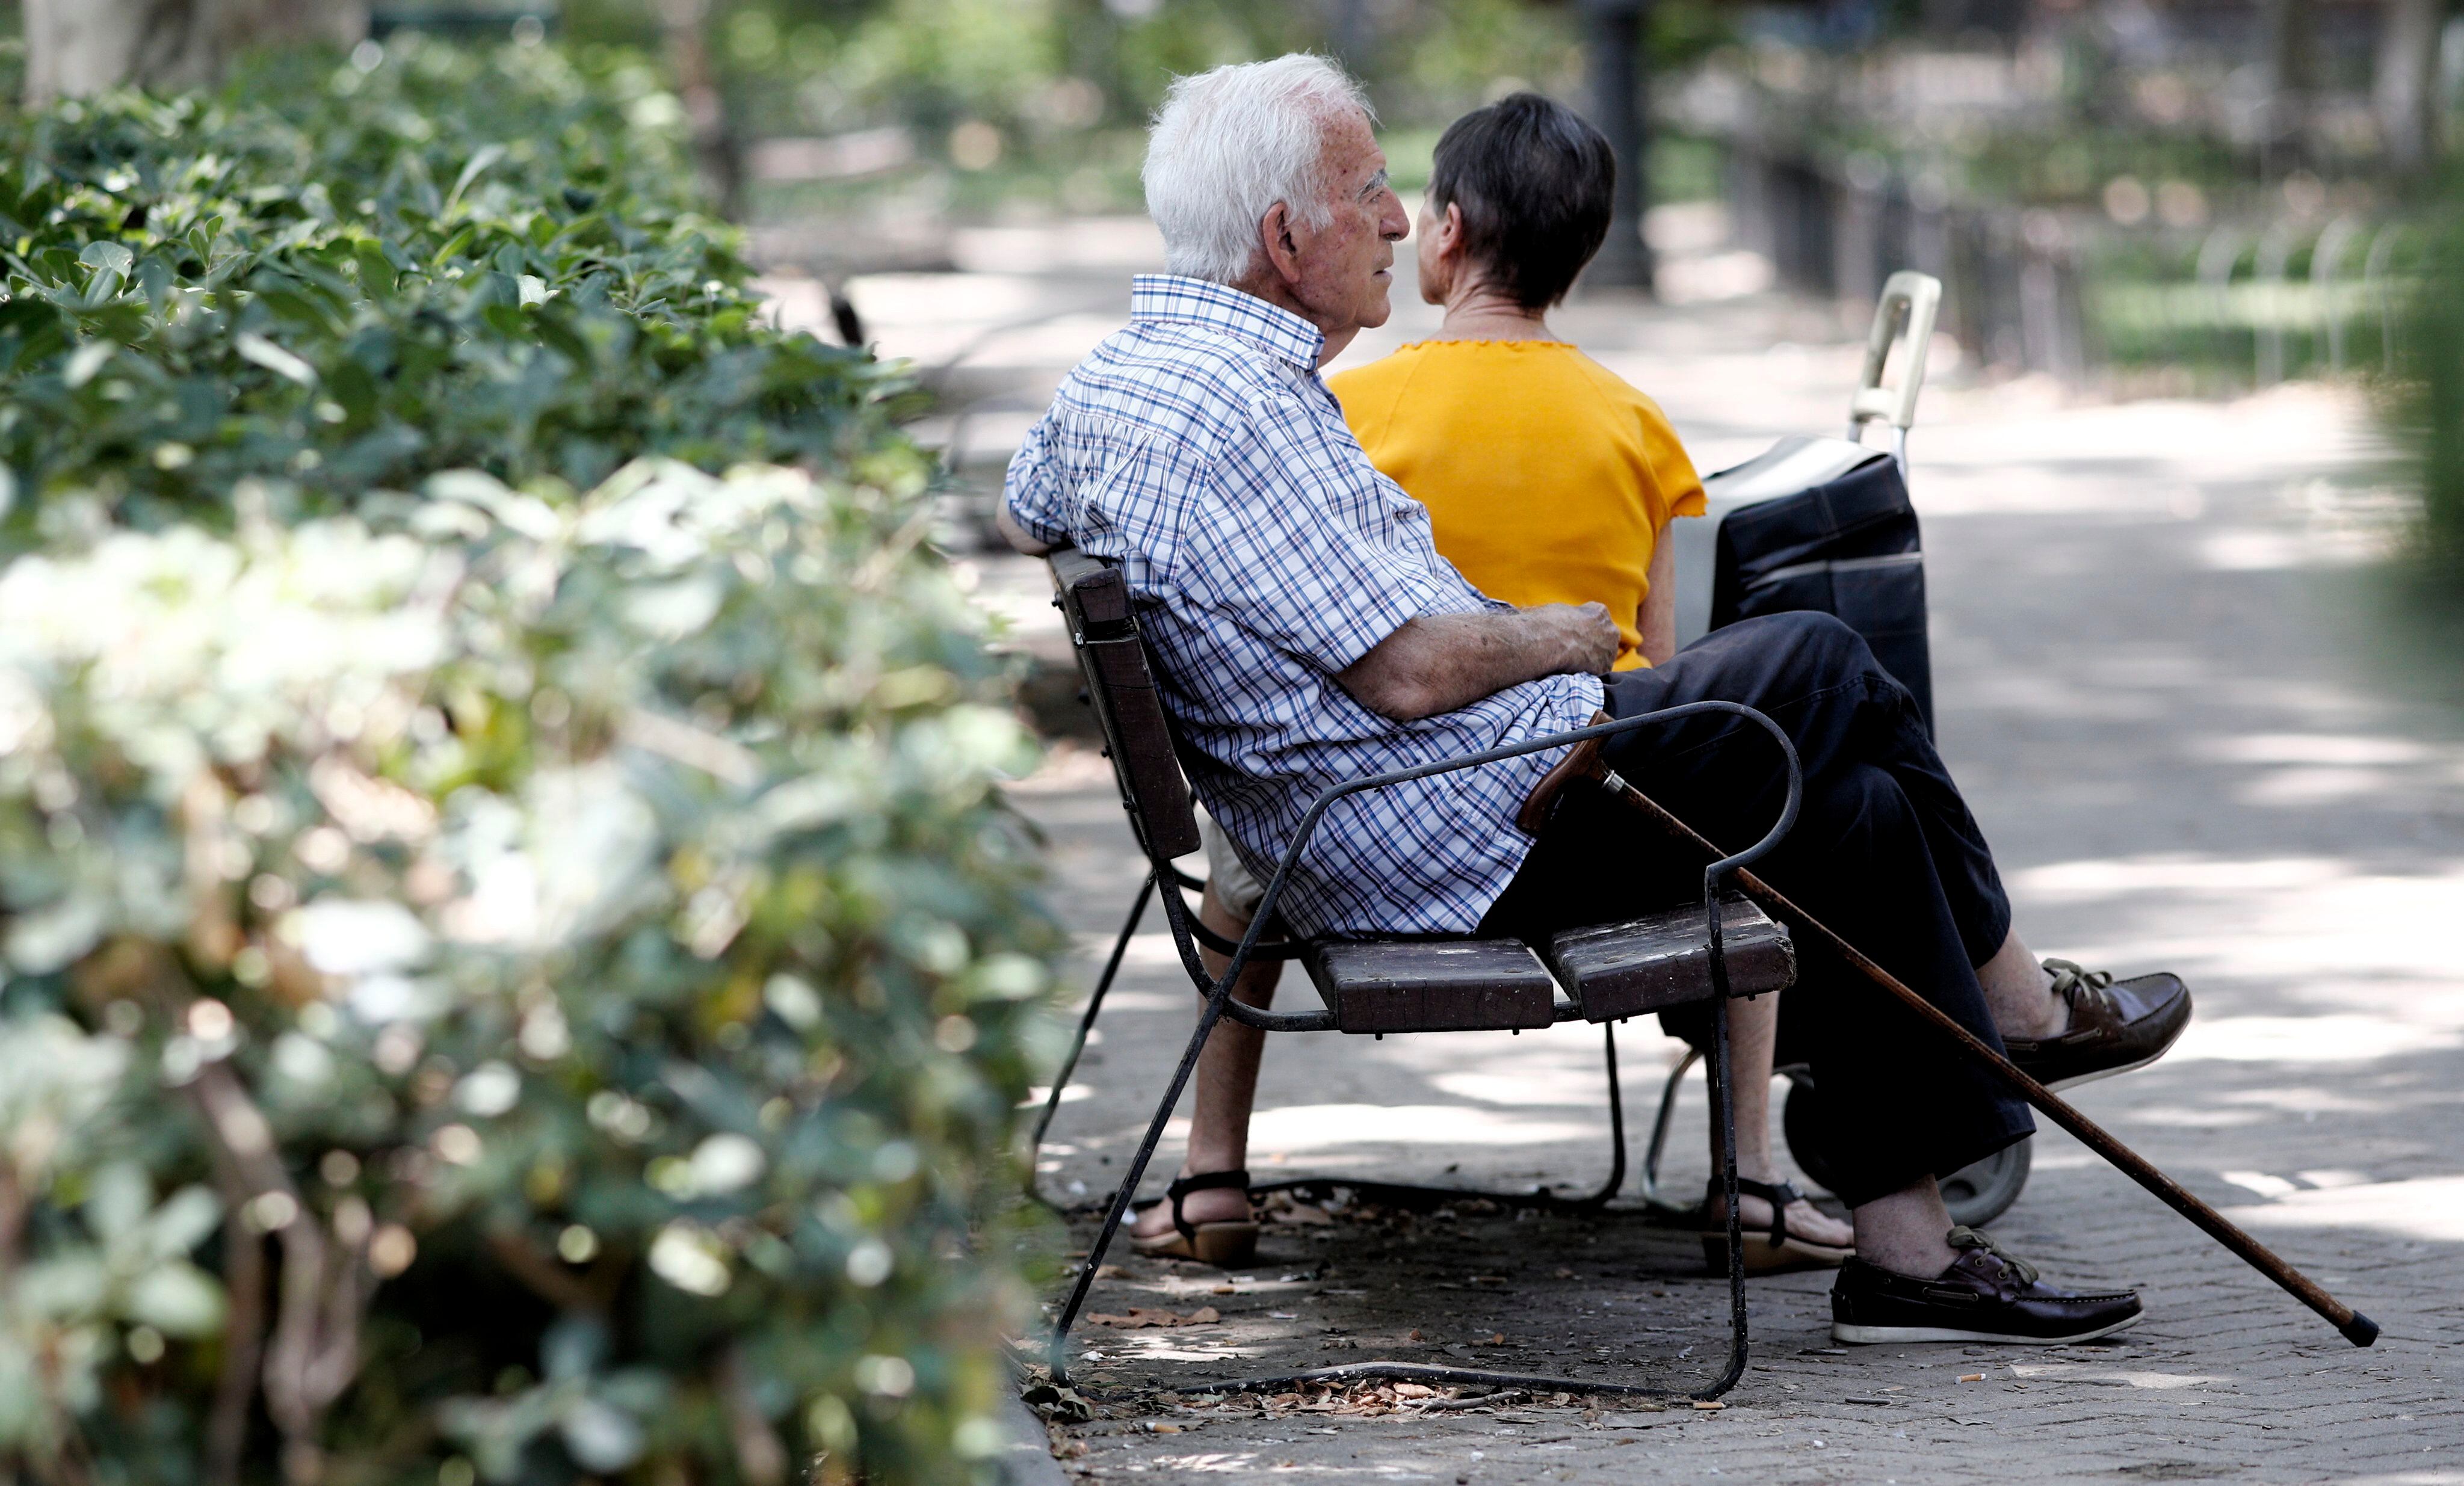 19/07/2019 Un pensionista descansa en un banco de un parque de Madrid.
ECONOMIA 
Eduardo Parra - Europa Press
